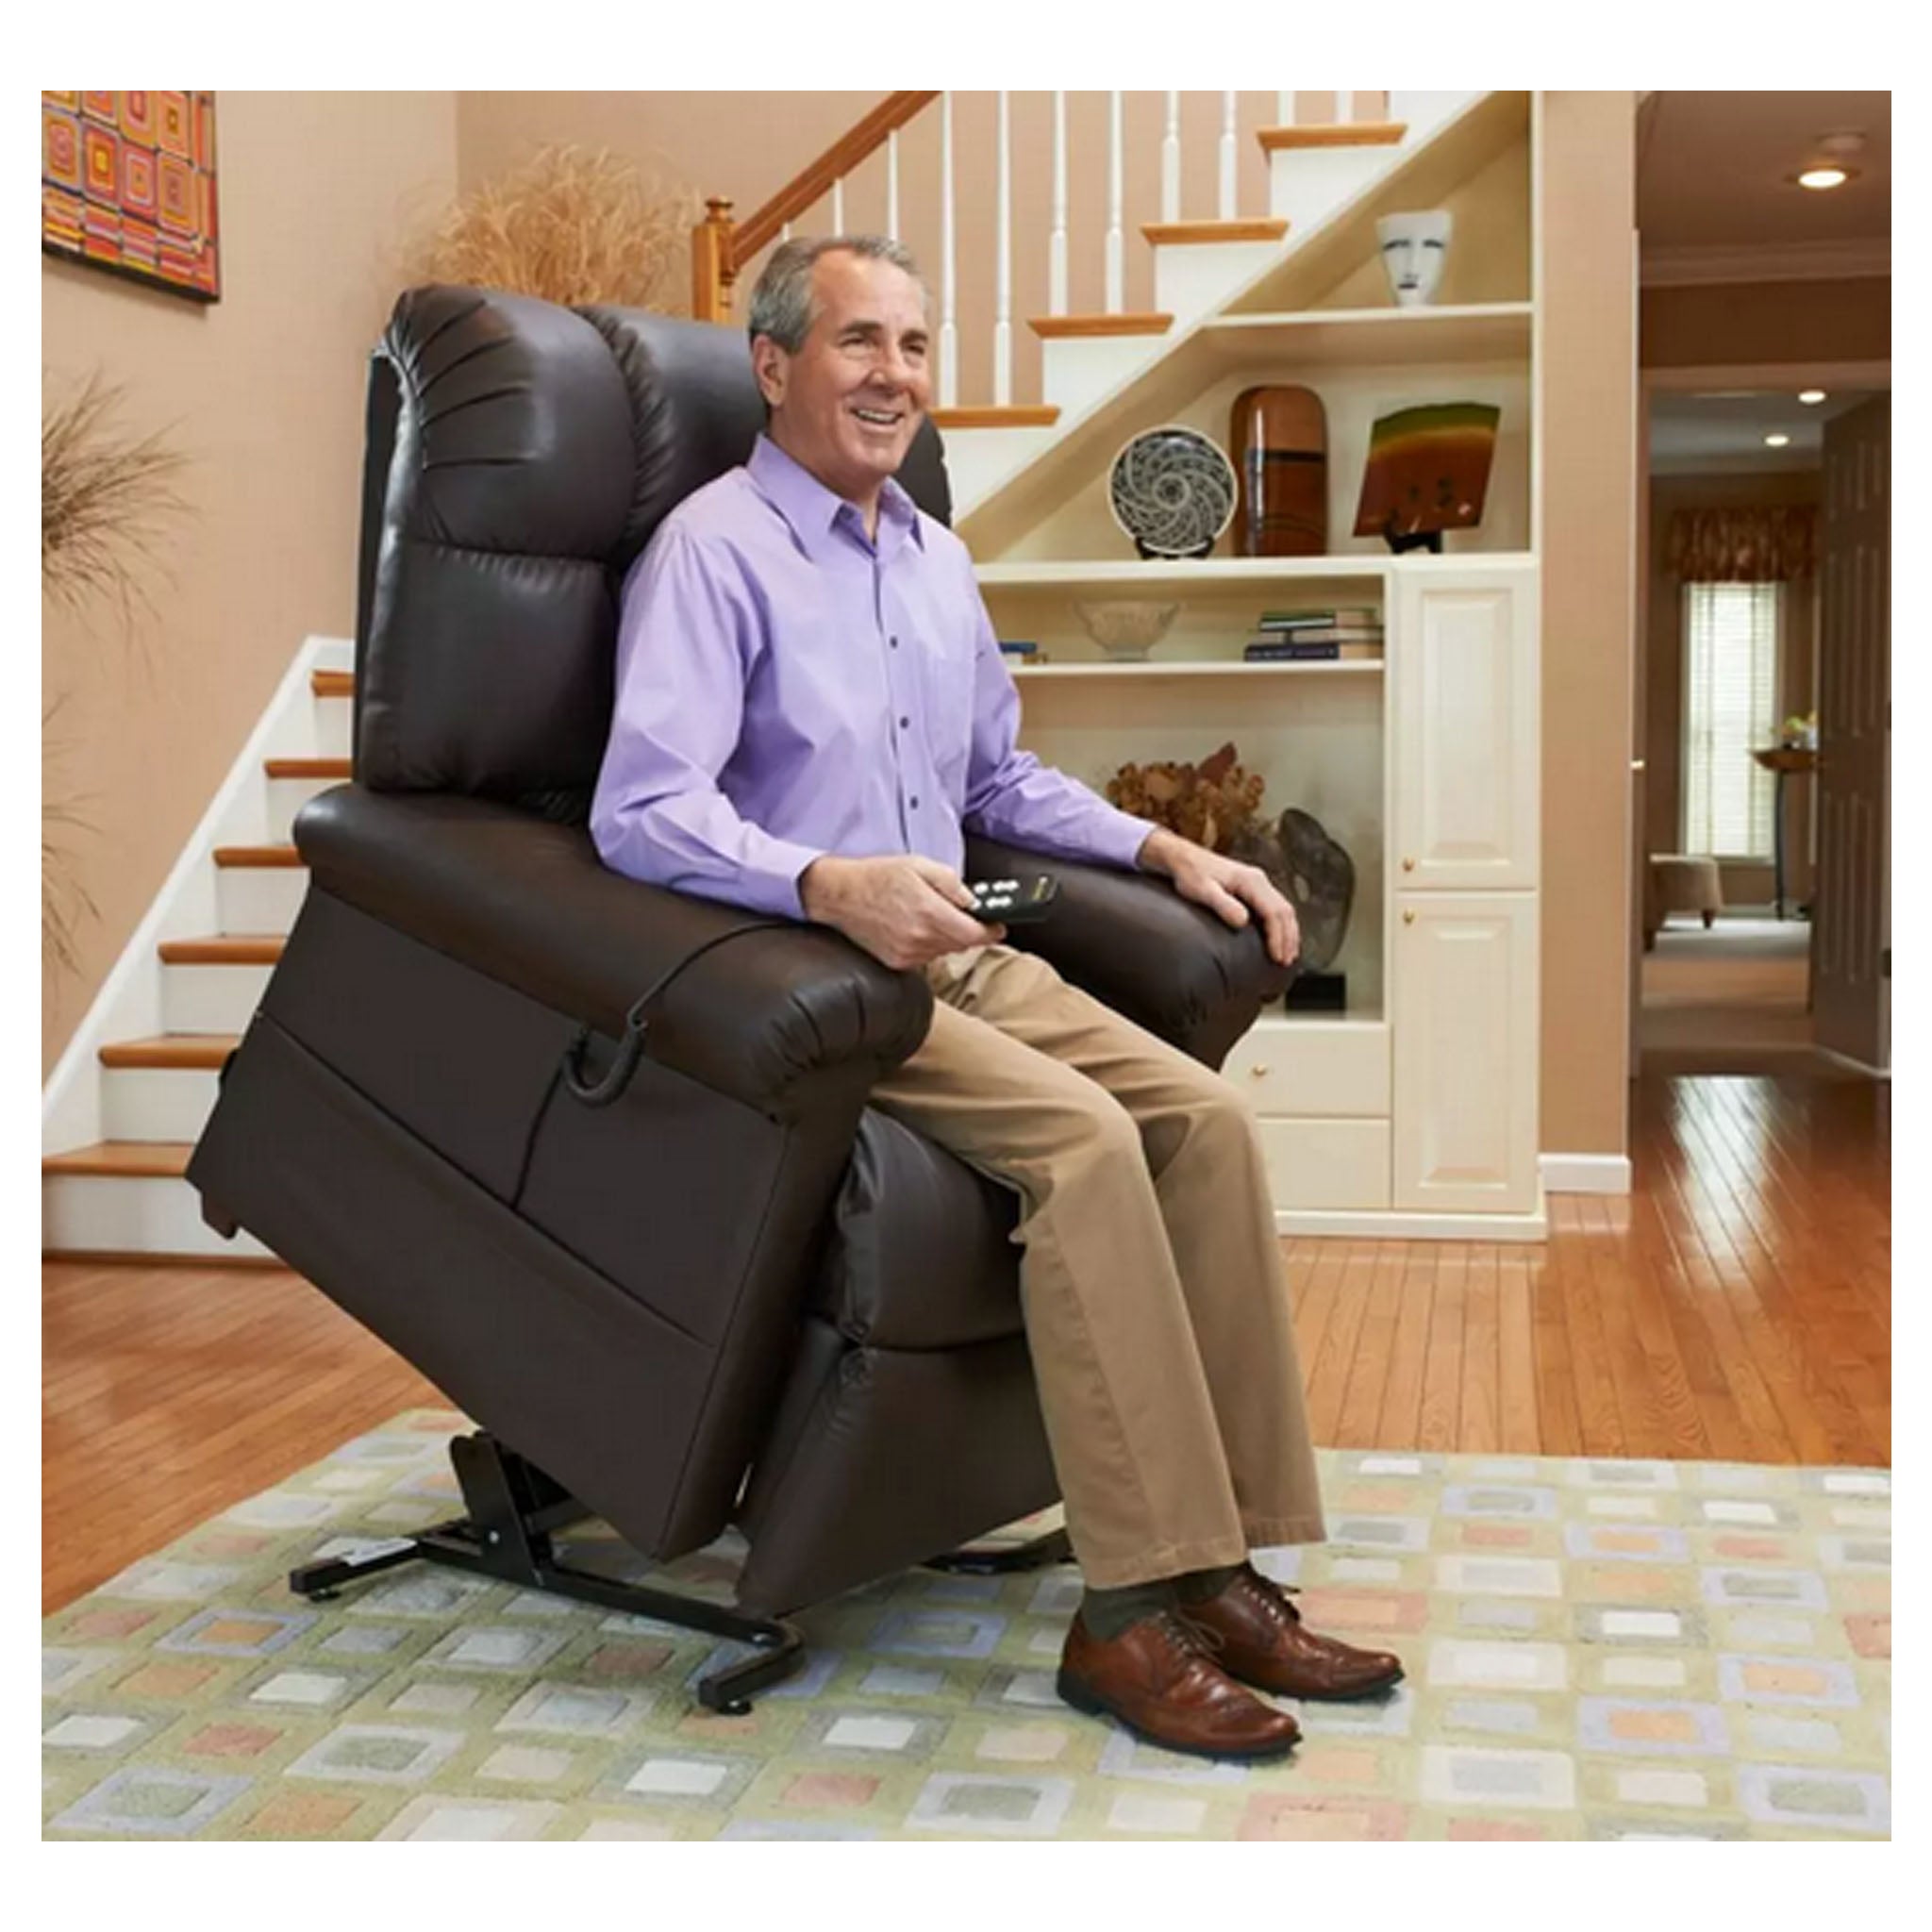 Golden Technologies PR-510 Cloud Lift Chair with MaxiComfort